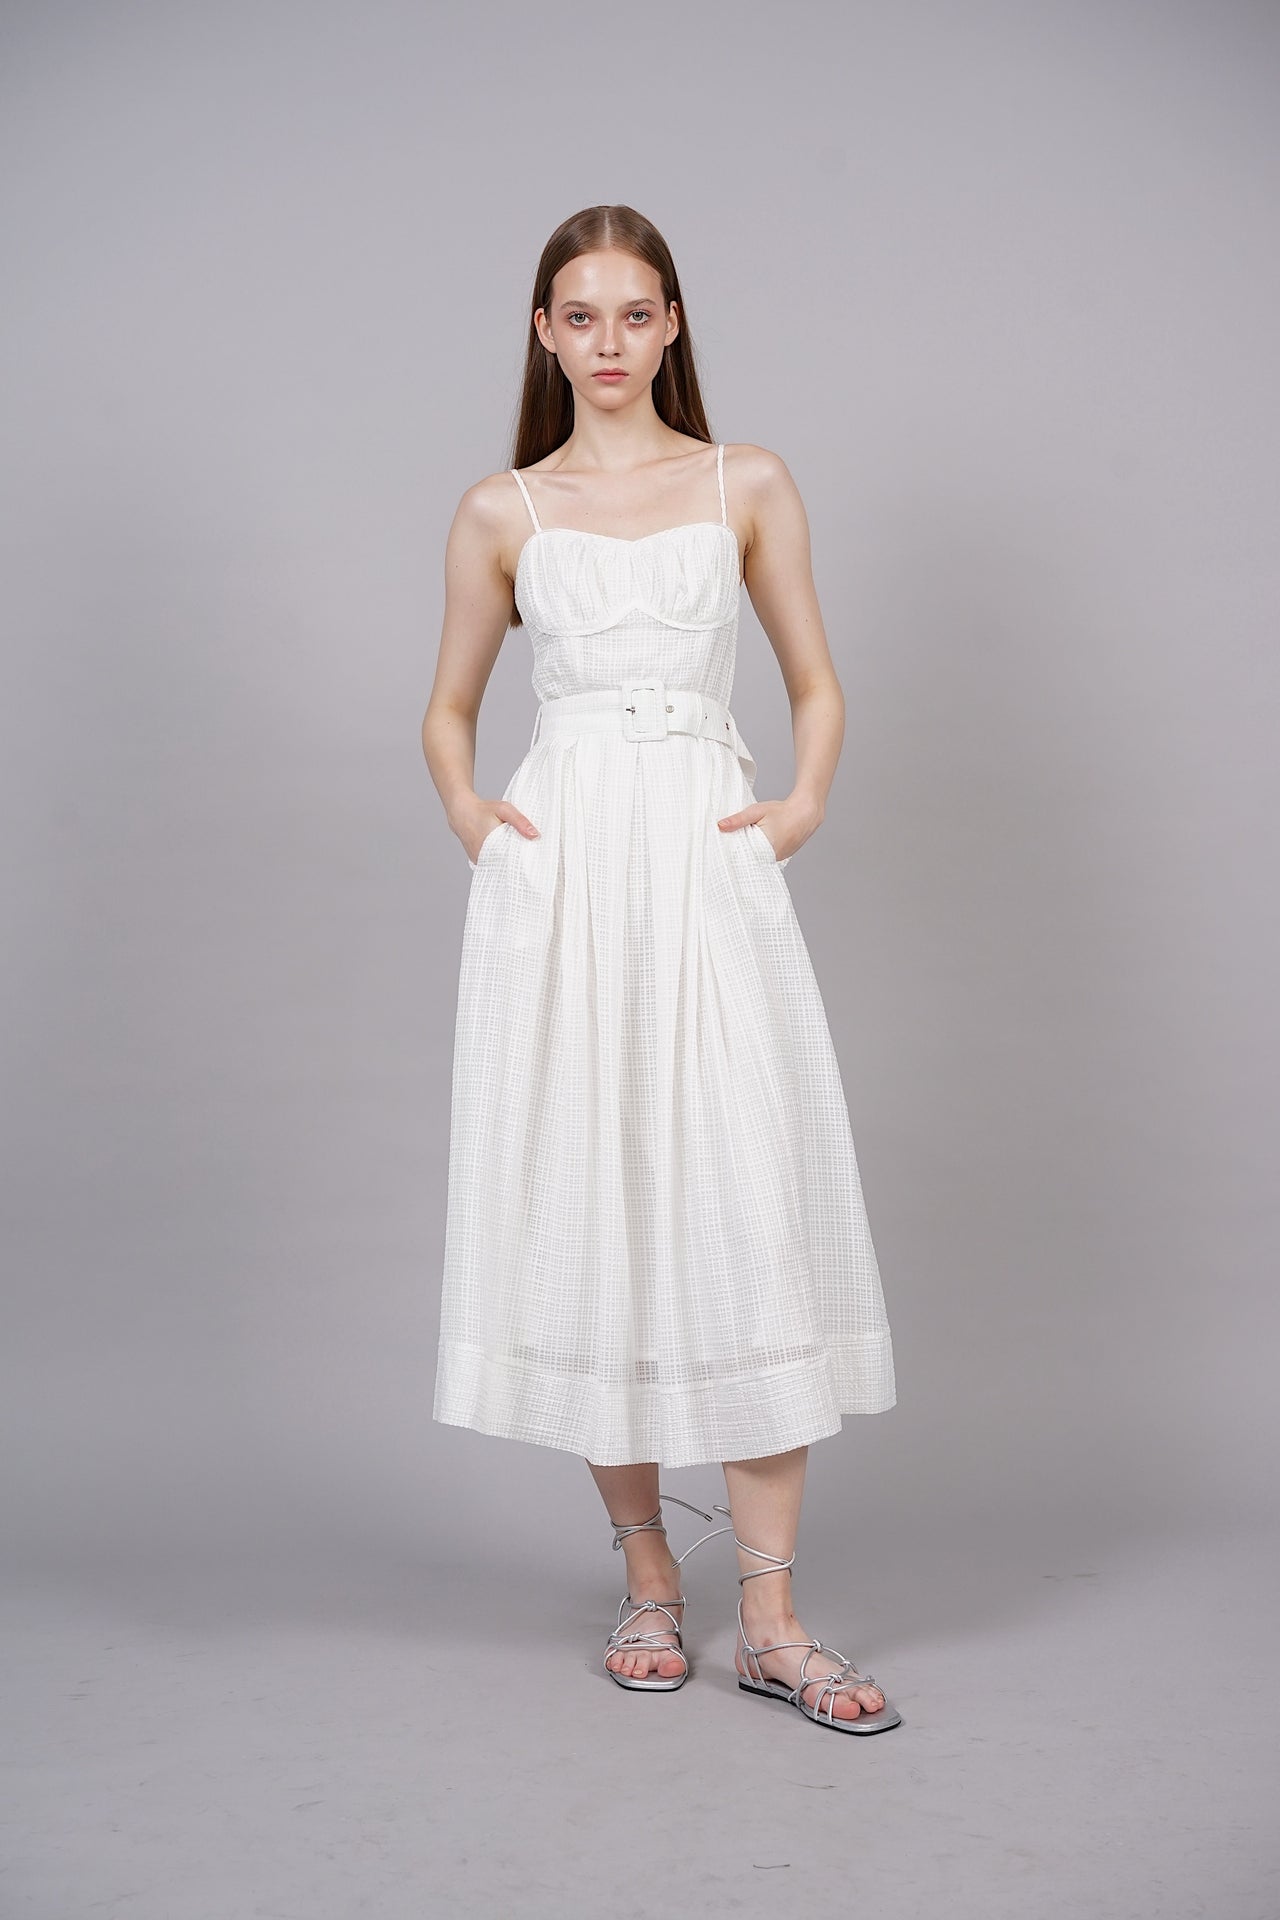 Textured Checks Midi Dress in White